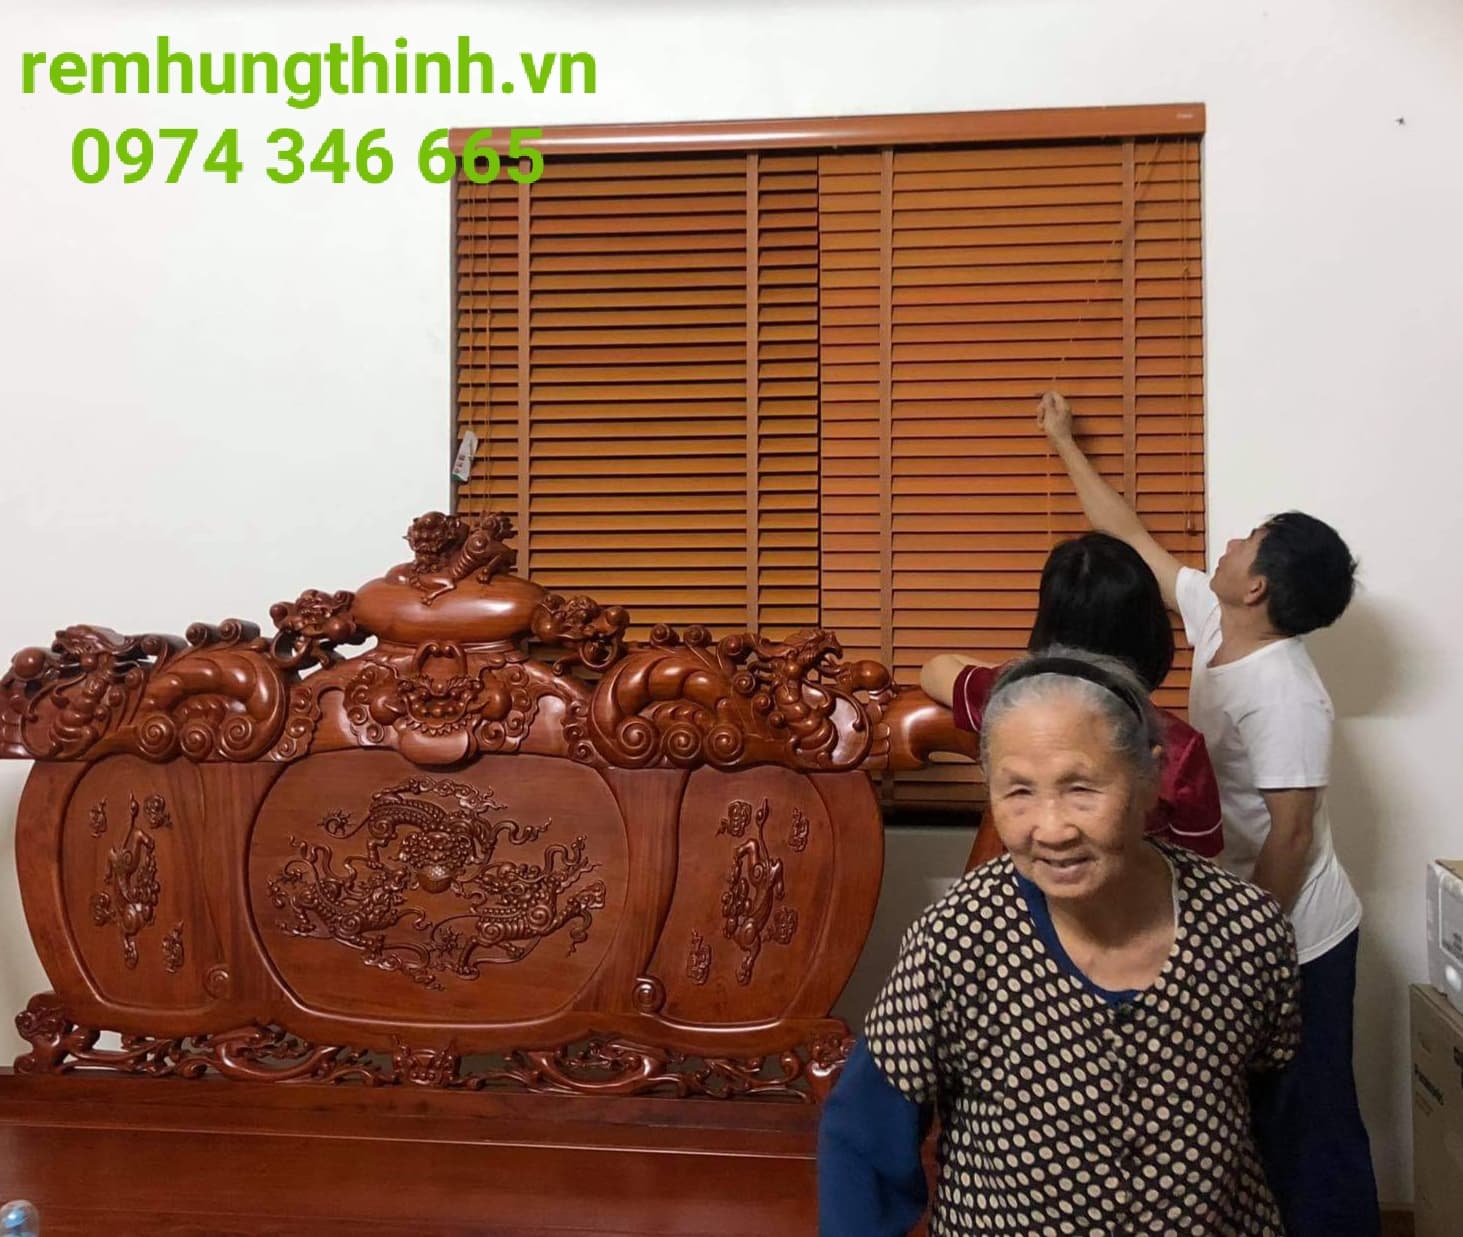 Rèm sáo gỗ được làm từ gỗ tự nhiên tại phường Mai Dịch quận Cầu Giấy